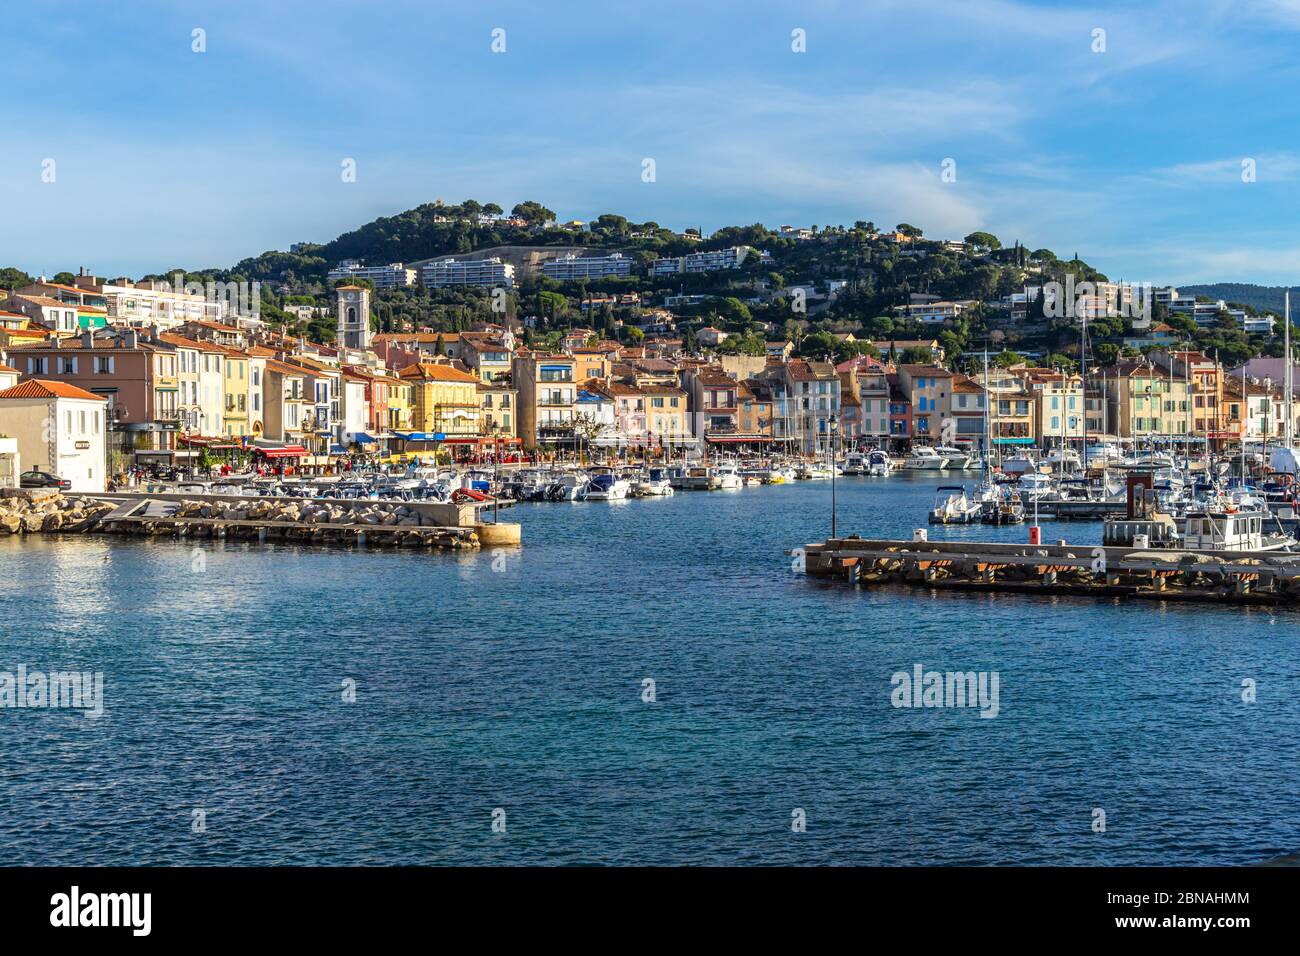 Le port pittoresque de Cassis, une petite station balnéaire du sud de la France près de Marseille Banque D'Images